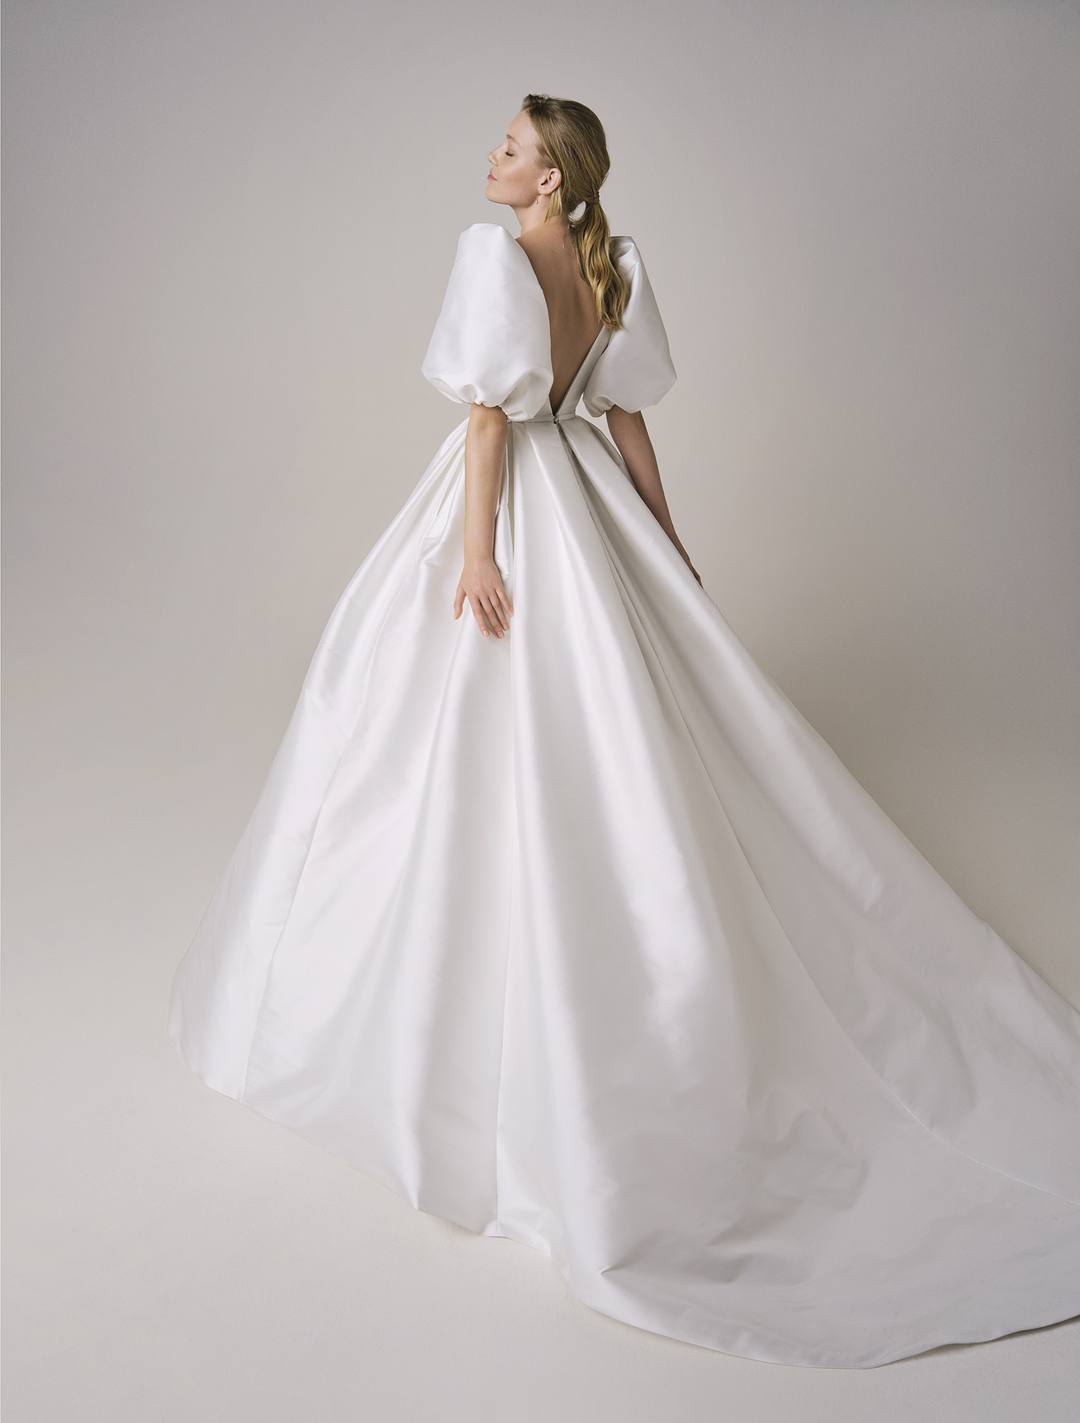 Jesus Peiro 246 Amalia Gown Taffeta Wedding Dresses are Trending Dresses like Princess Diana Wedding Dress Bridal Musings 3 - Váy cưới Taffeta đang trở lại xu hướng (nhờ Công nương Diana)